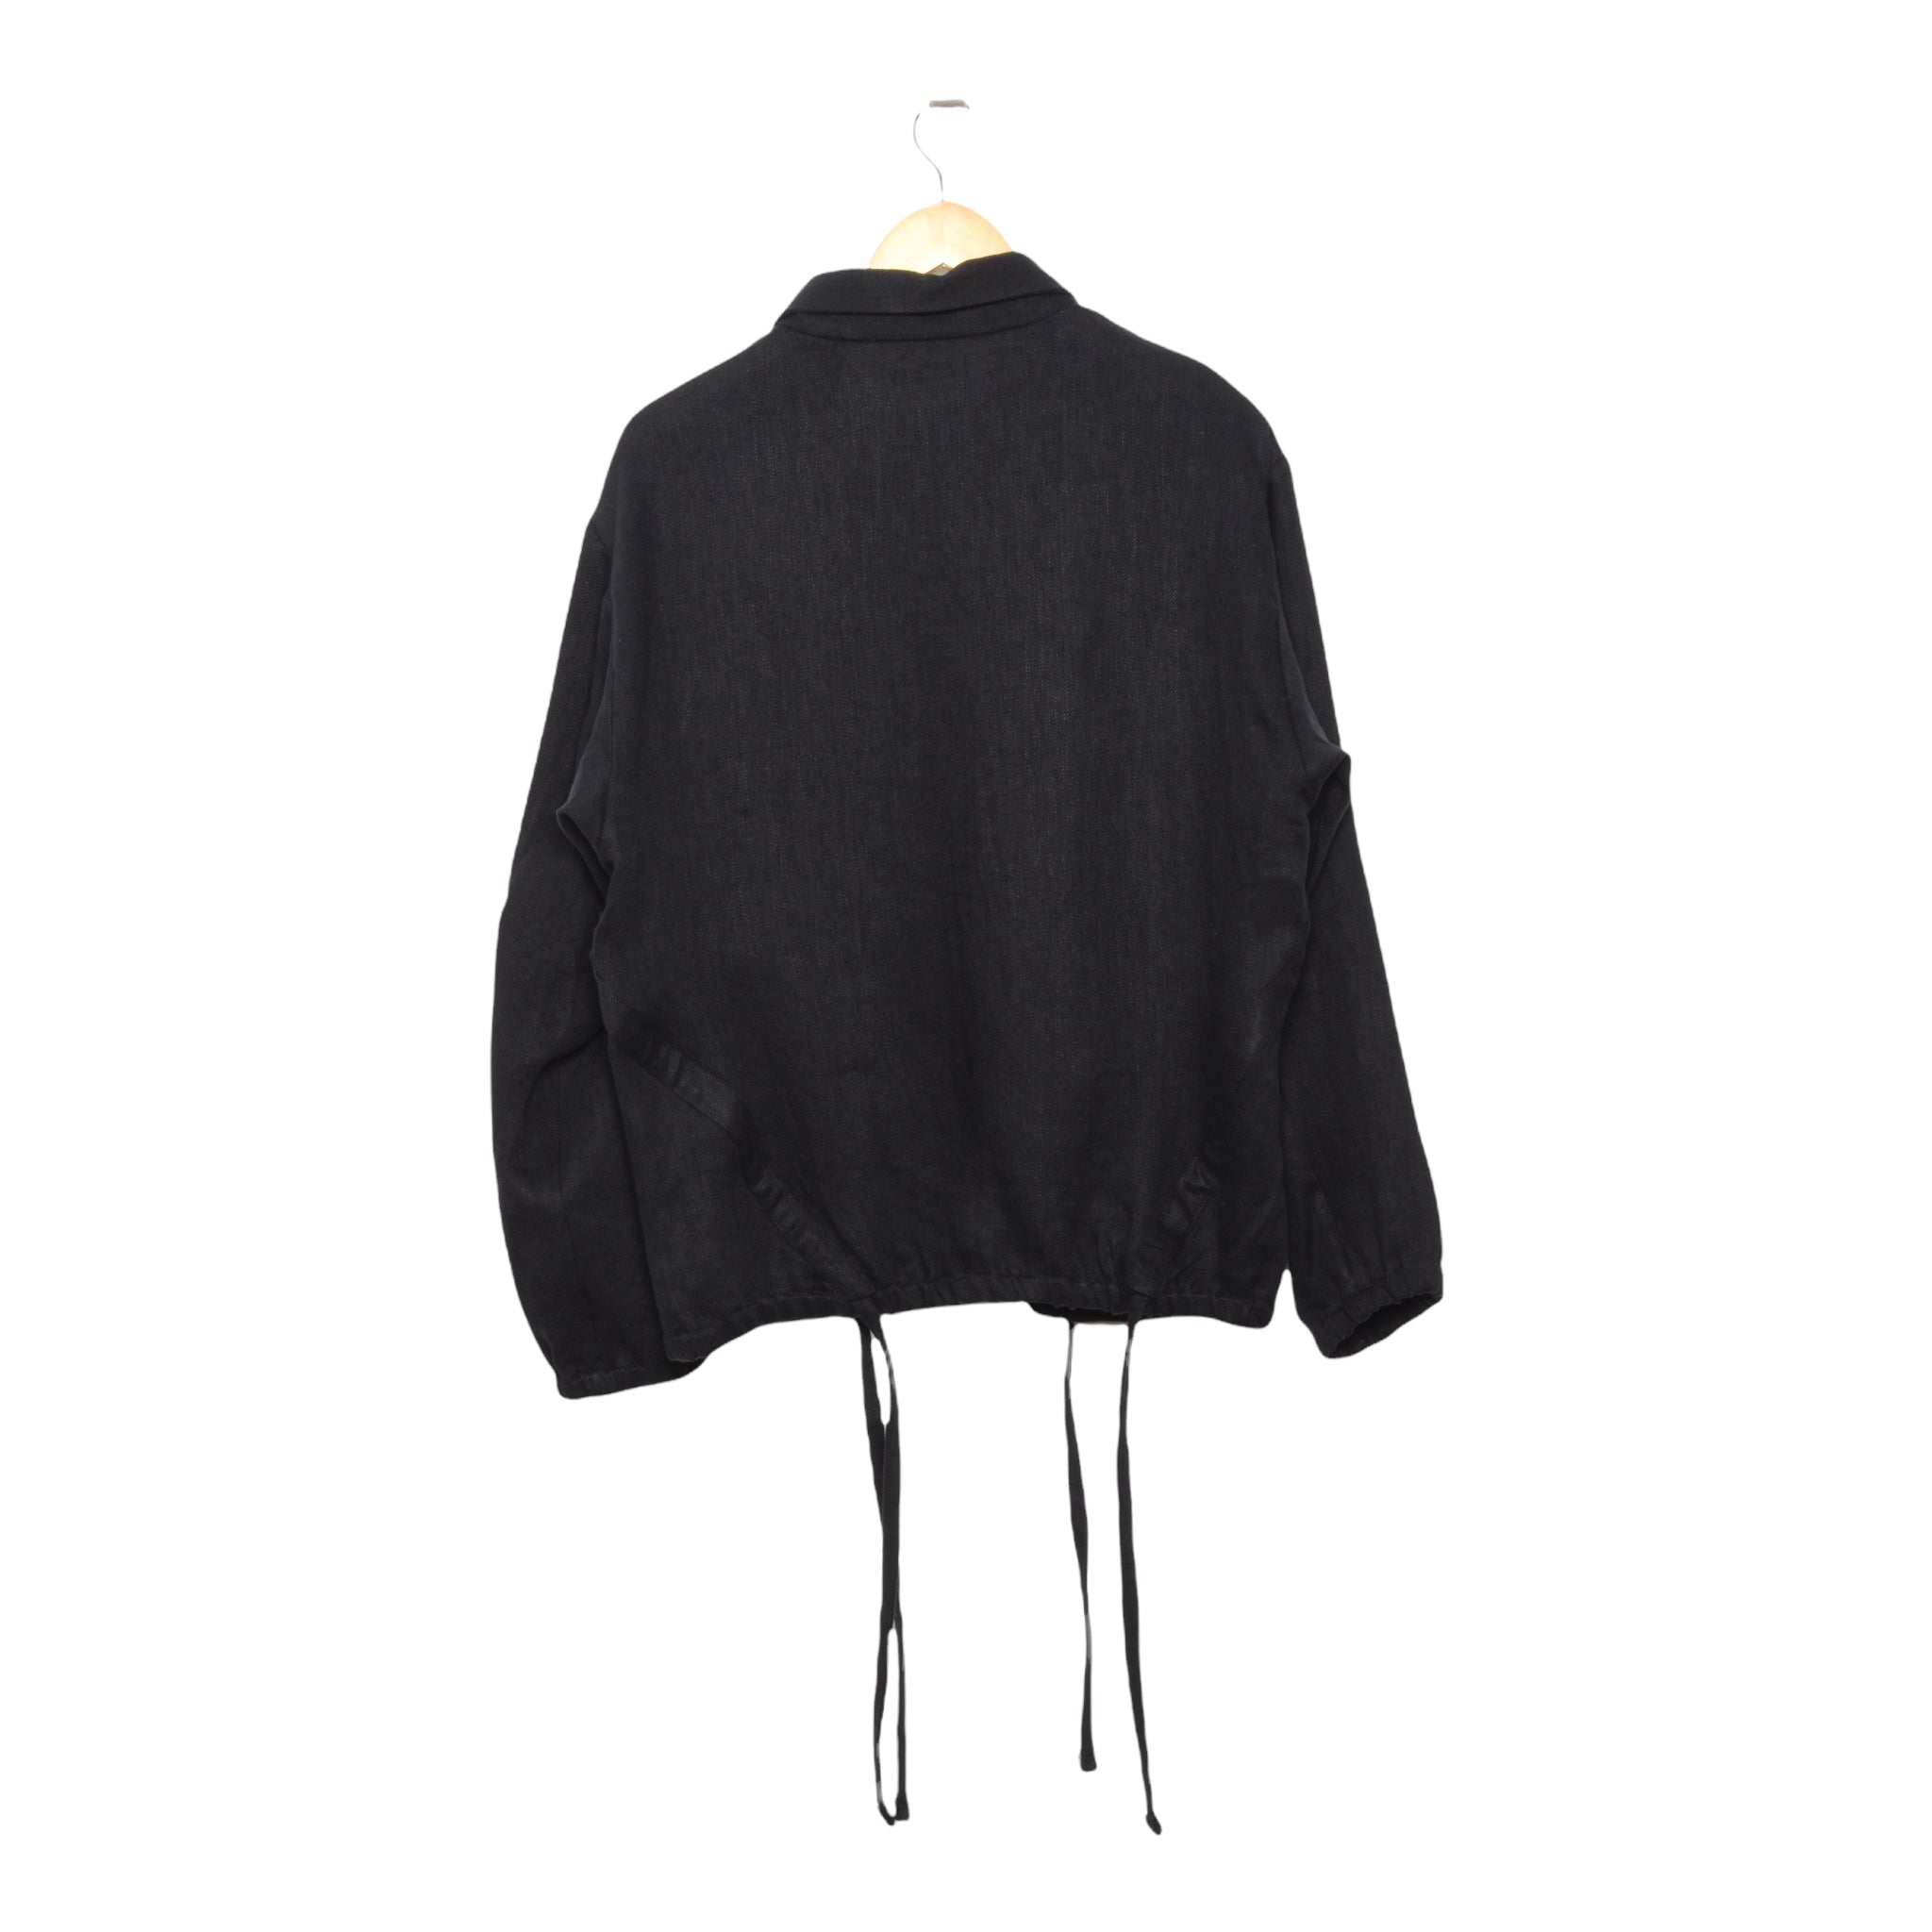 Frank Leder Washed Linen Jacket black